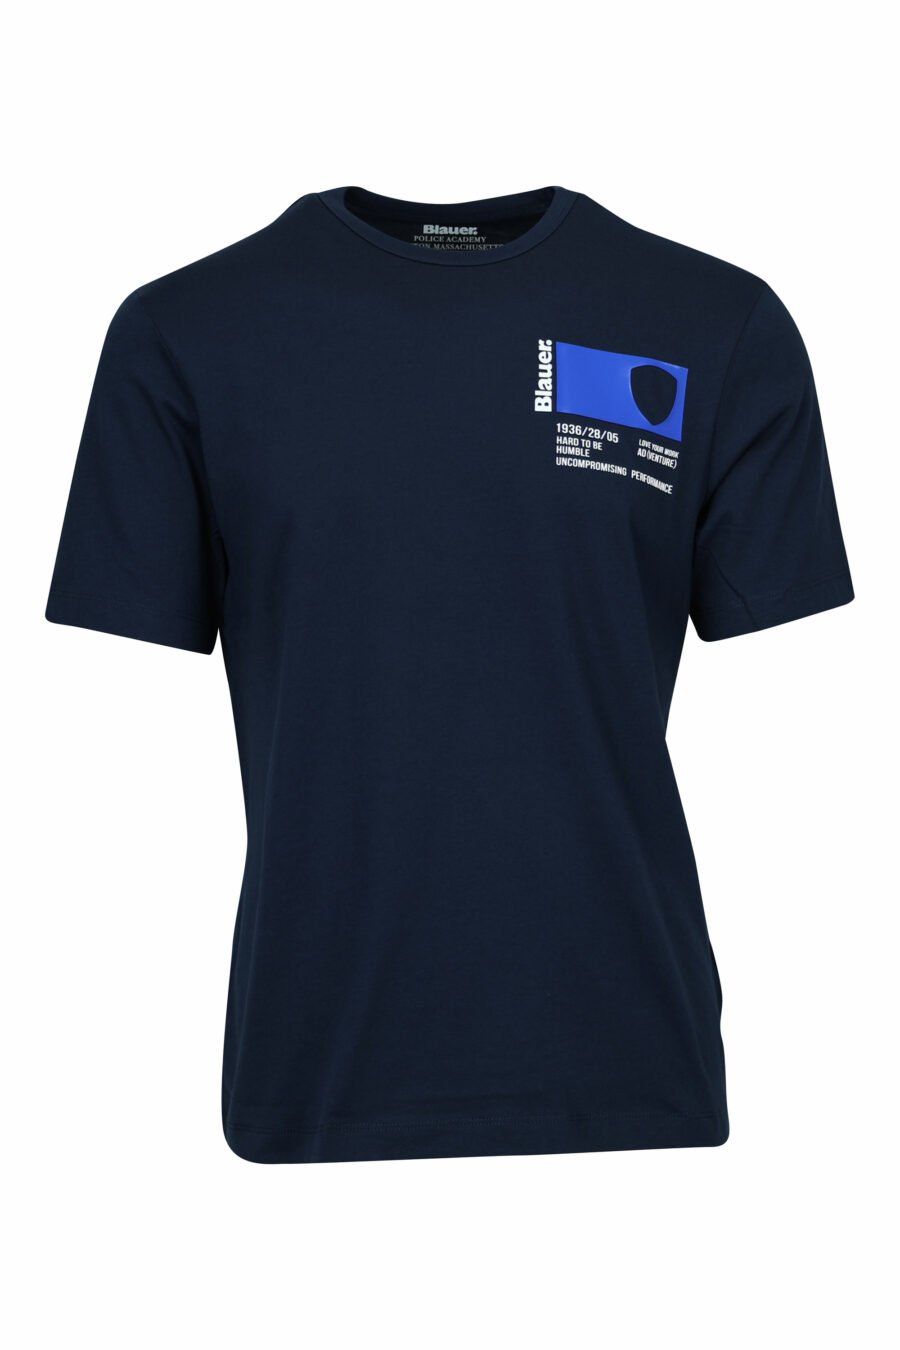 Blaues T-Shirt mit Mini-Logo bedruckte Tasche - 8058610799946